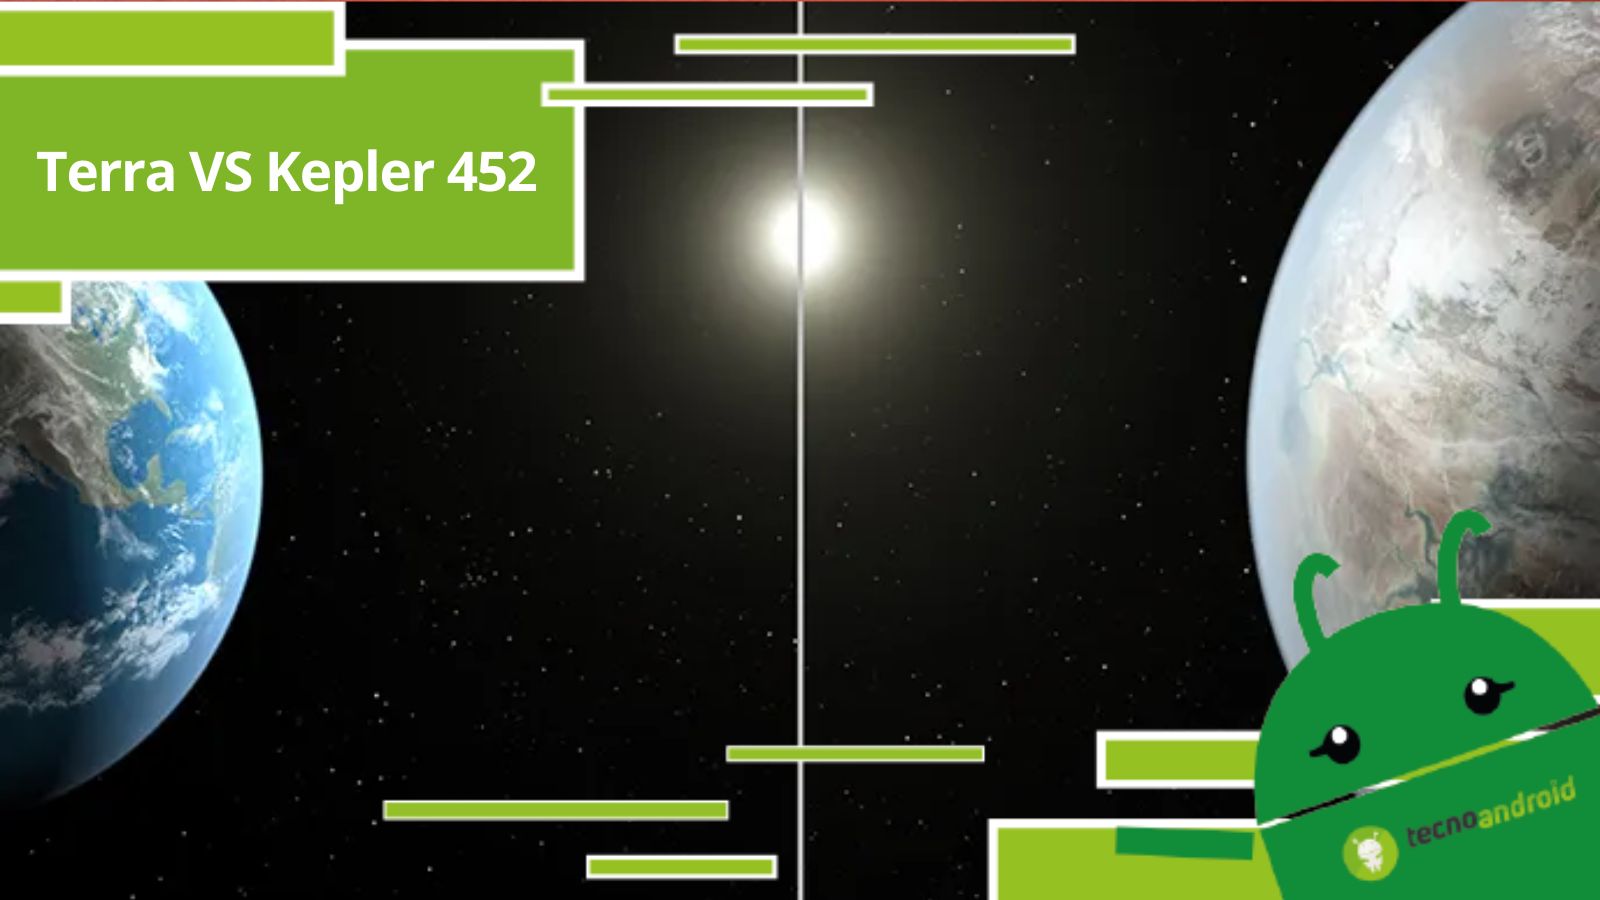 La domanda se siamo soli nell'universo ha affascinato l'umanità per secoli. Il 23 luglio 2015, la NASA ha annunciato una scoperta che ha portato un po' di luce su questa questione. Hanno scoperto un pianeta, chiamato Kepler-452 b, che è il più simile alla Terra mai osservato prima. Questo orbita attorno a una stella simile al nostro Sole, e gli scienziati non escludono la possibilità che possa ospitare la vita.